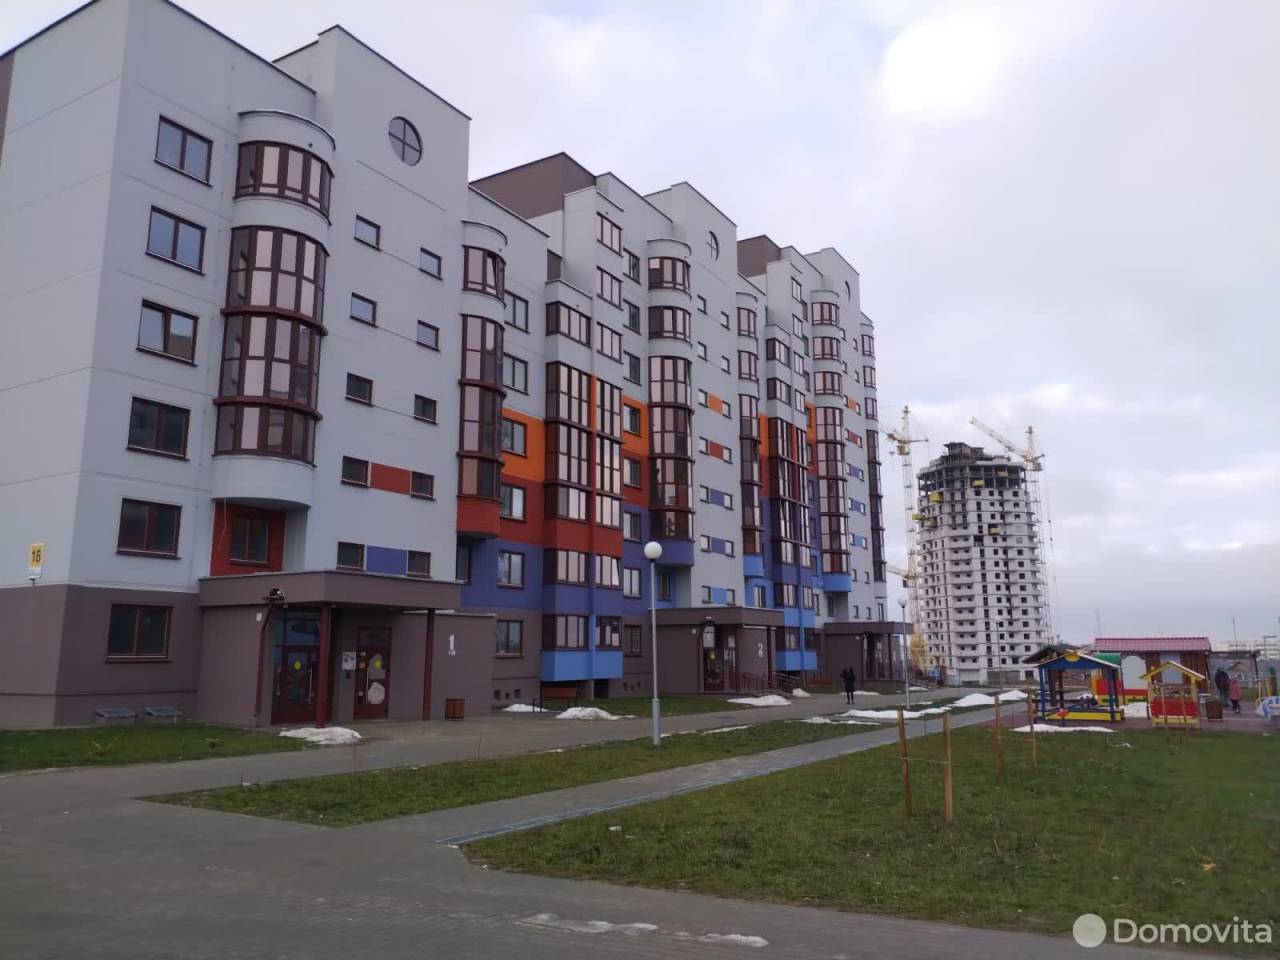 Четверть всех квартир, проданных в областных городах Беларуси, пришлось на Гродно